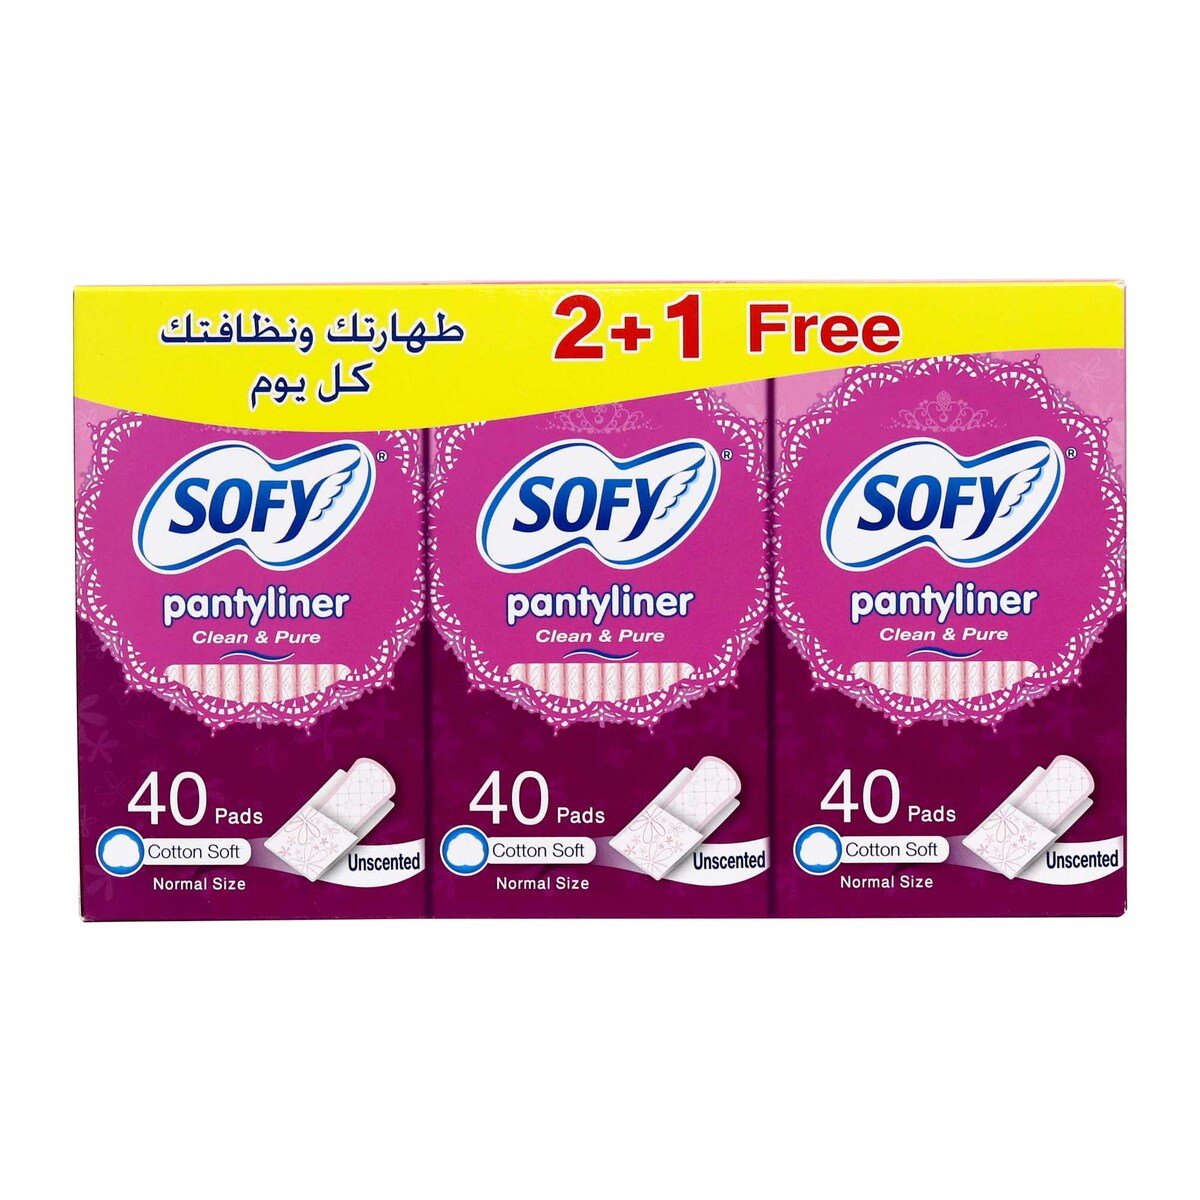 اشتري قم بشراء سوفي الفوط الصحية اليومية للنظافة والانتعاش غير معطرة 40 قطعة 2 + 1 Online at Best Price من الموقع - من لولو هايبر ماركت Sanpro Panty Liners في السعودية